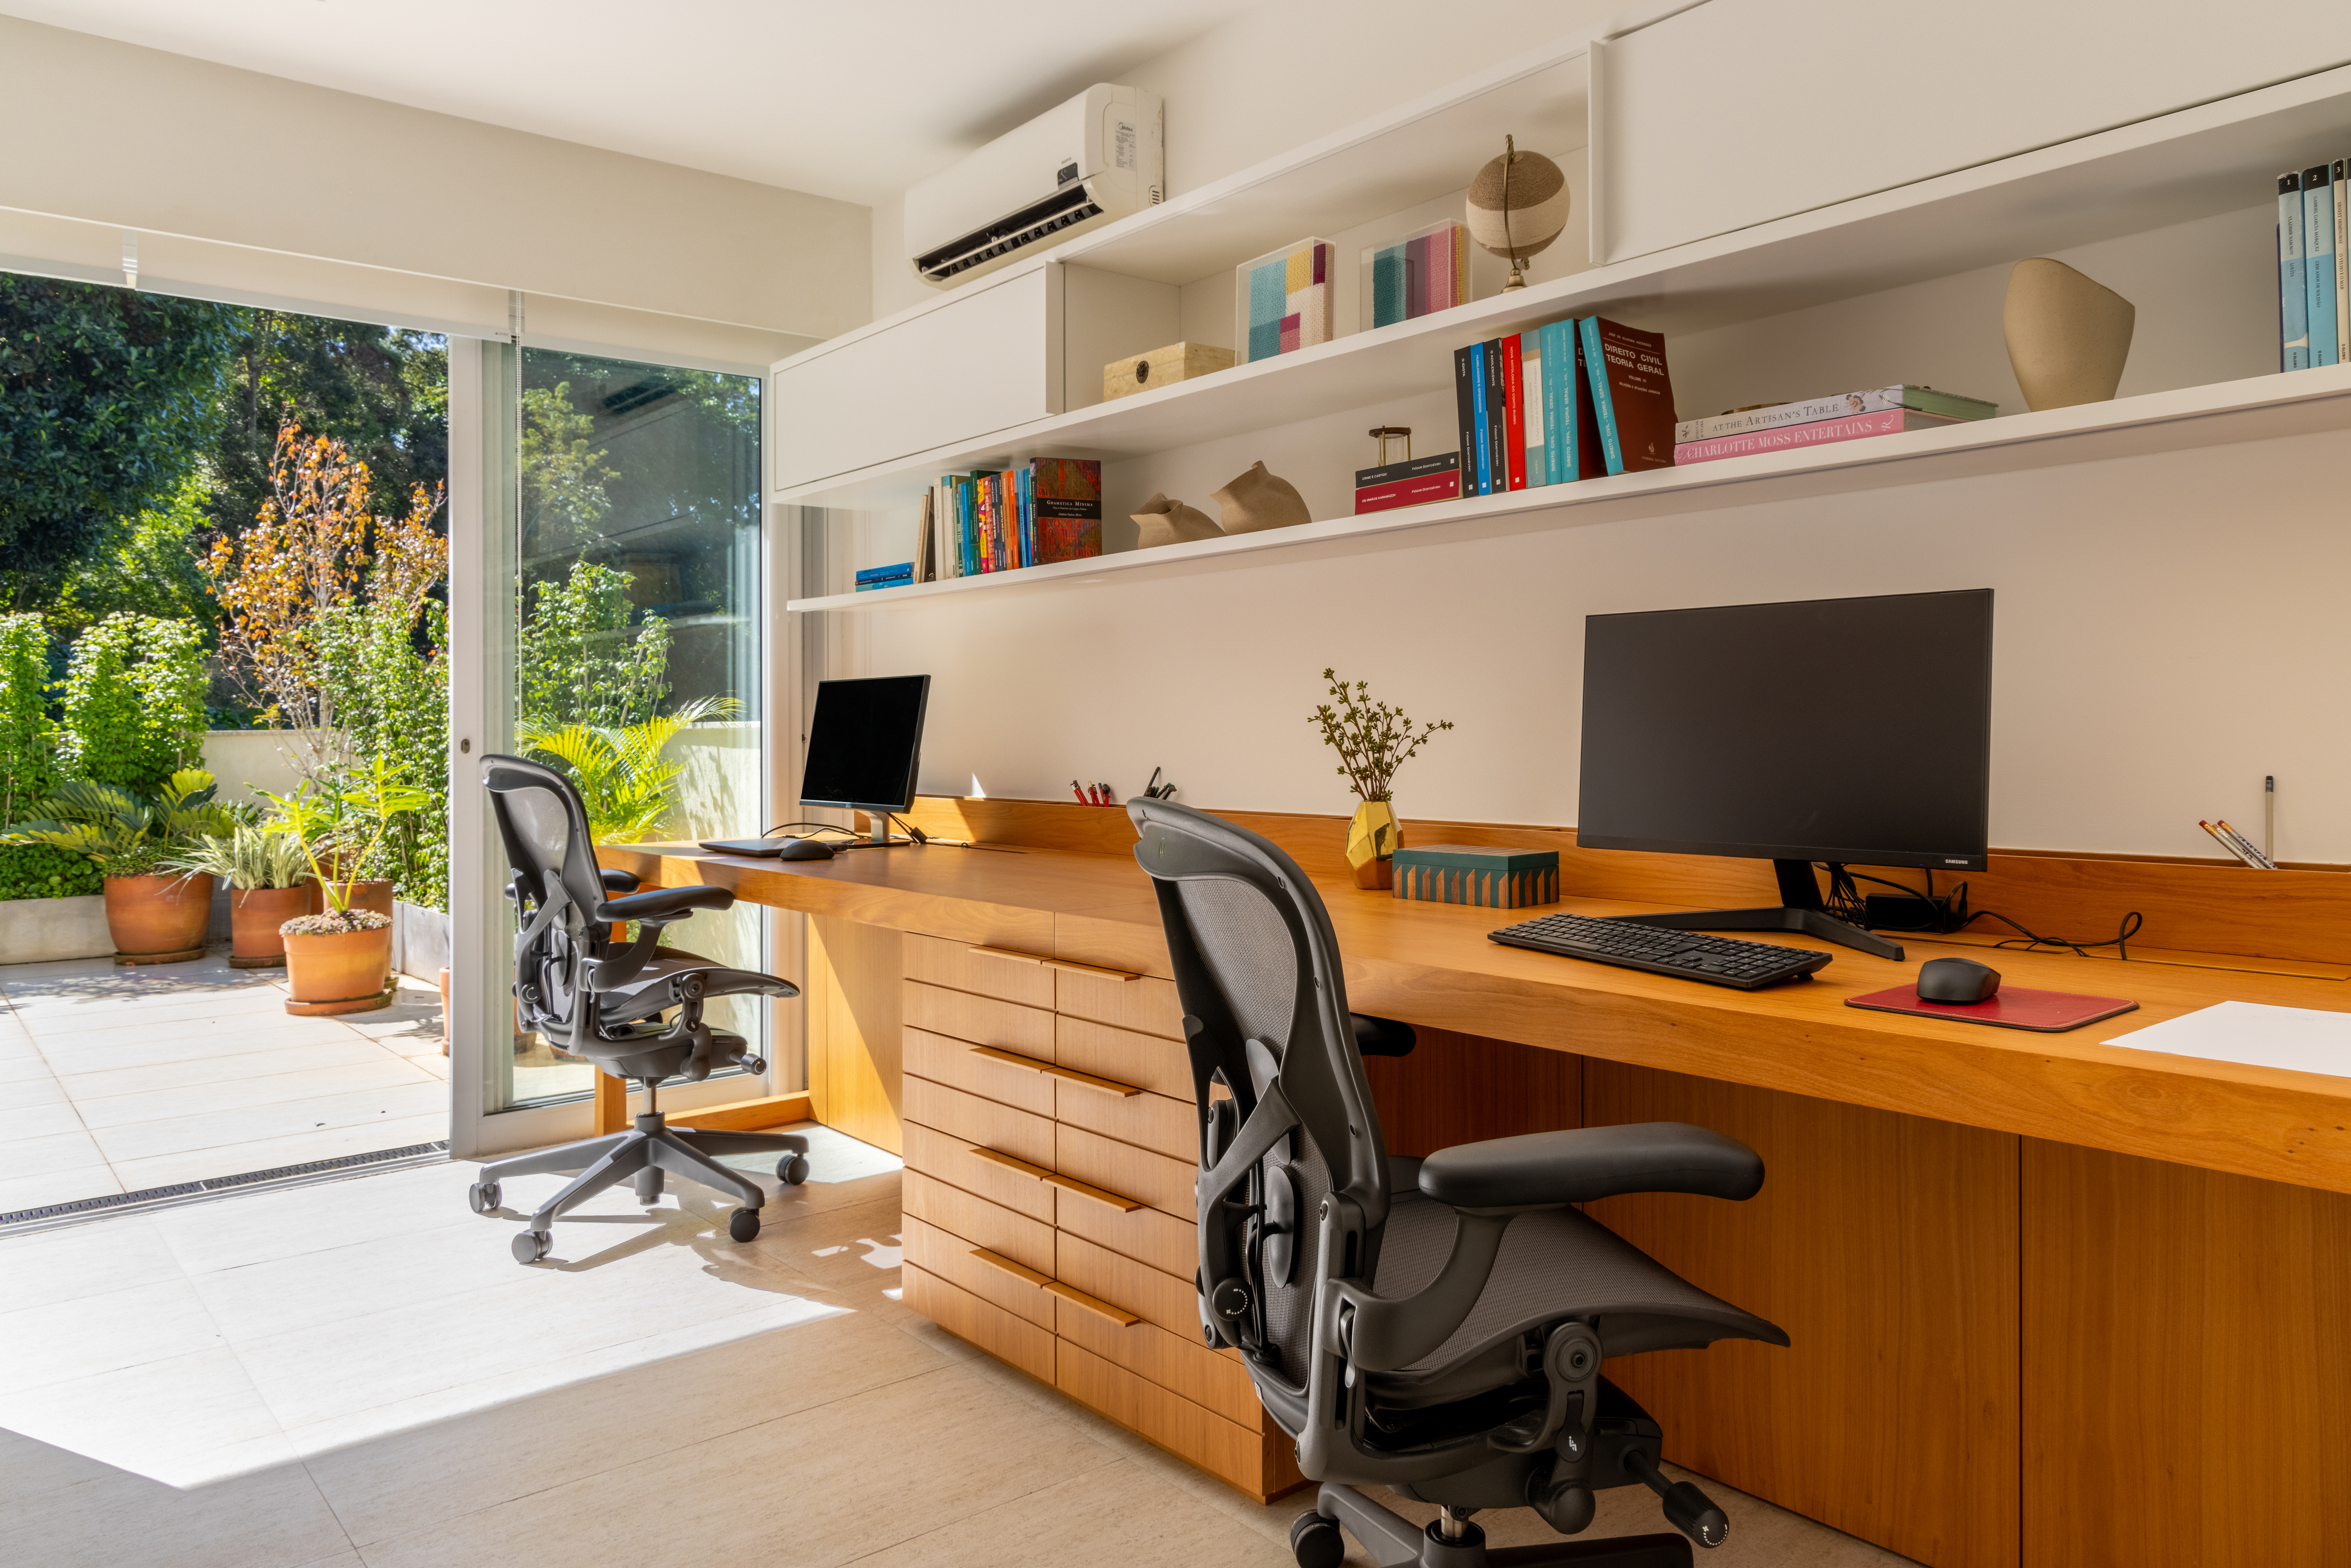 Projeto de Manuela Santos. Na foto, home office duplo com bancada de madeira e prateleiras brancas.